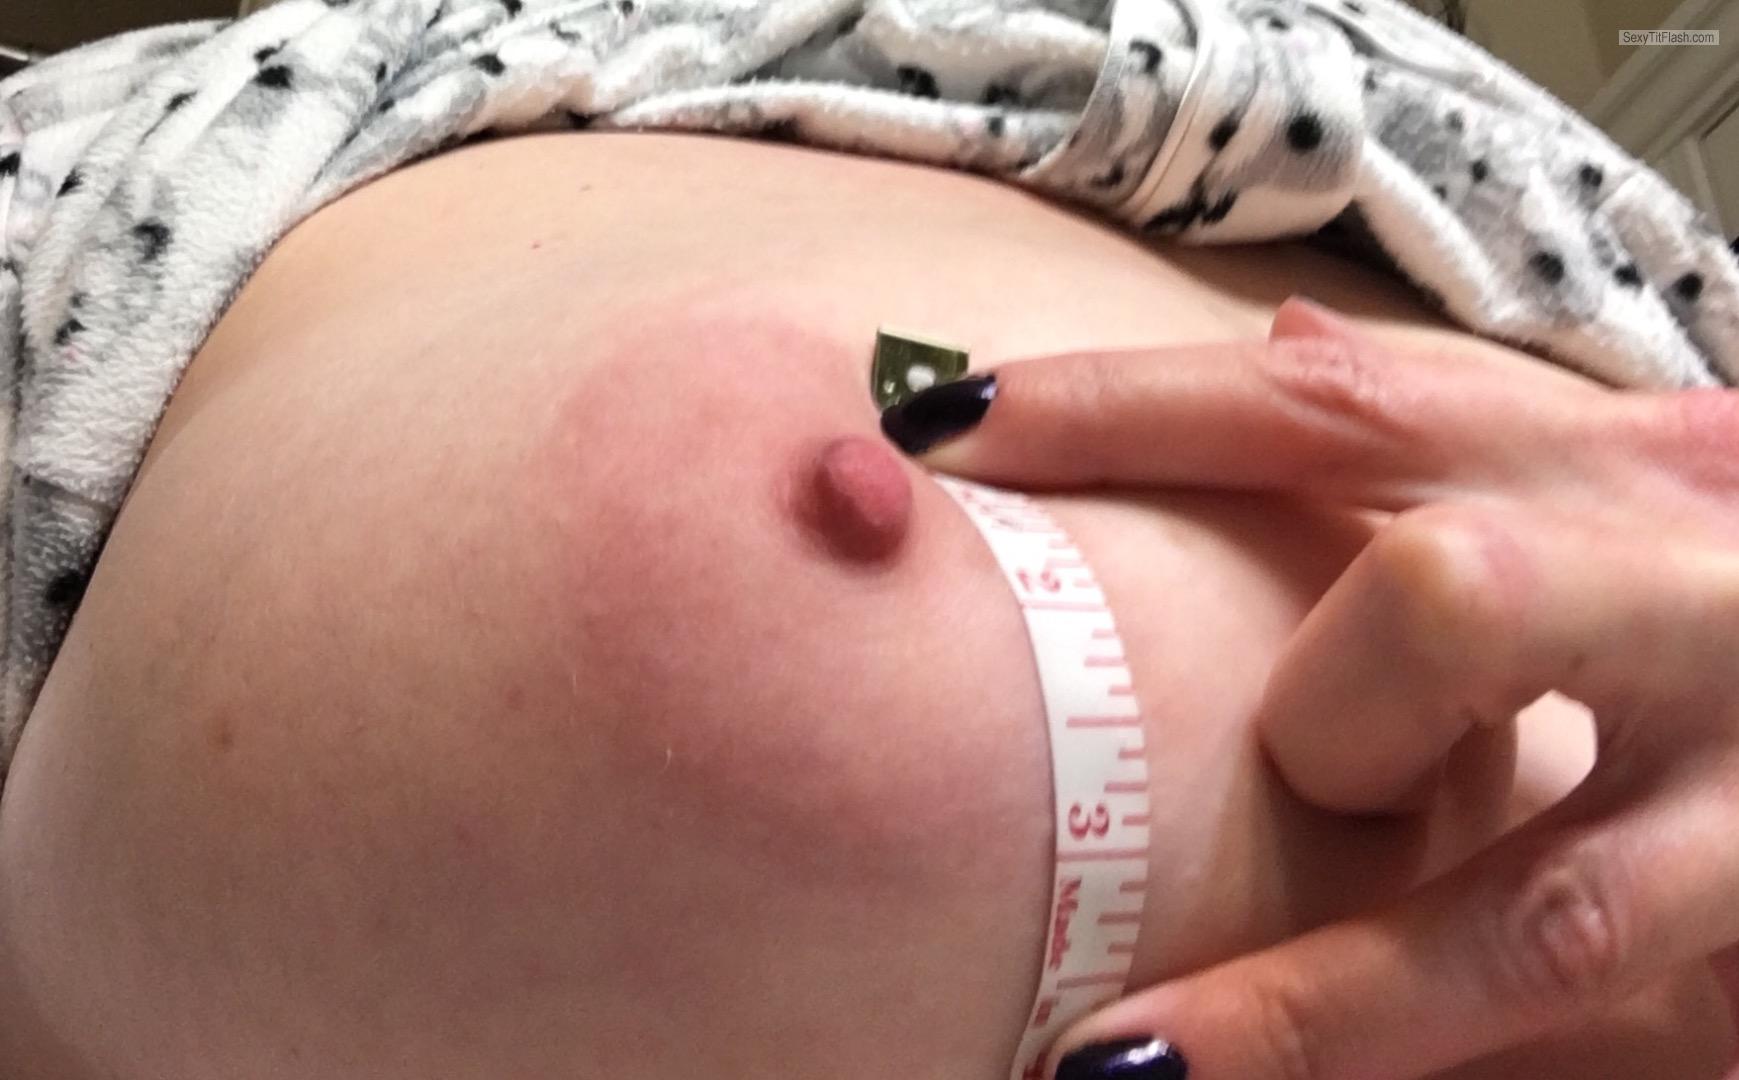 Tit Flash: My Big Tits (Selfie) - I ❤️ Shelf Bras from United Kingdom